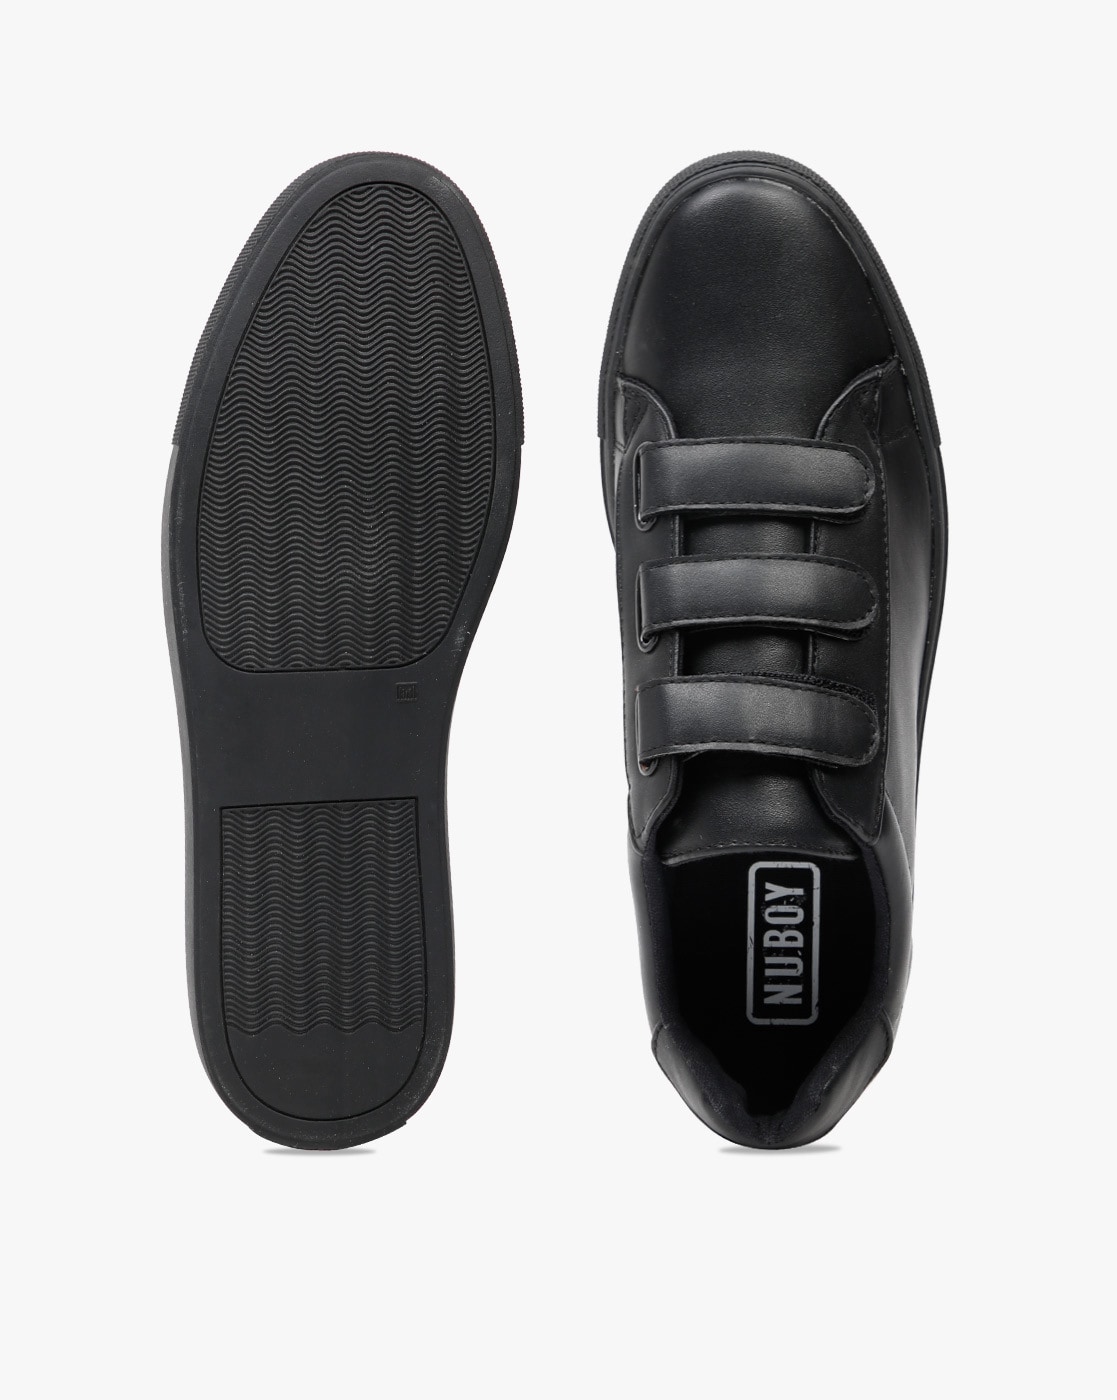 Hugo Boss Black Velcro Baby Sneaker - Tassel Children Shoes